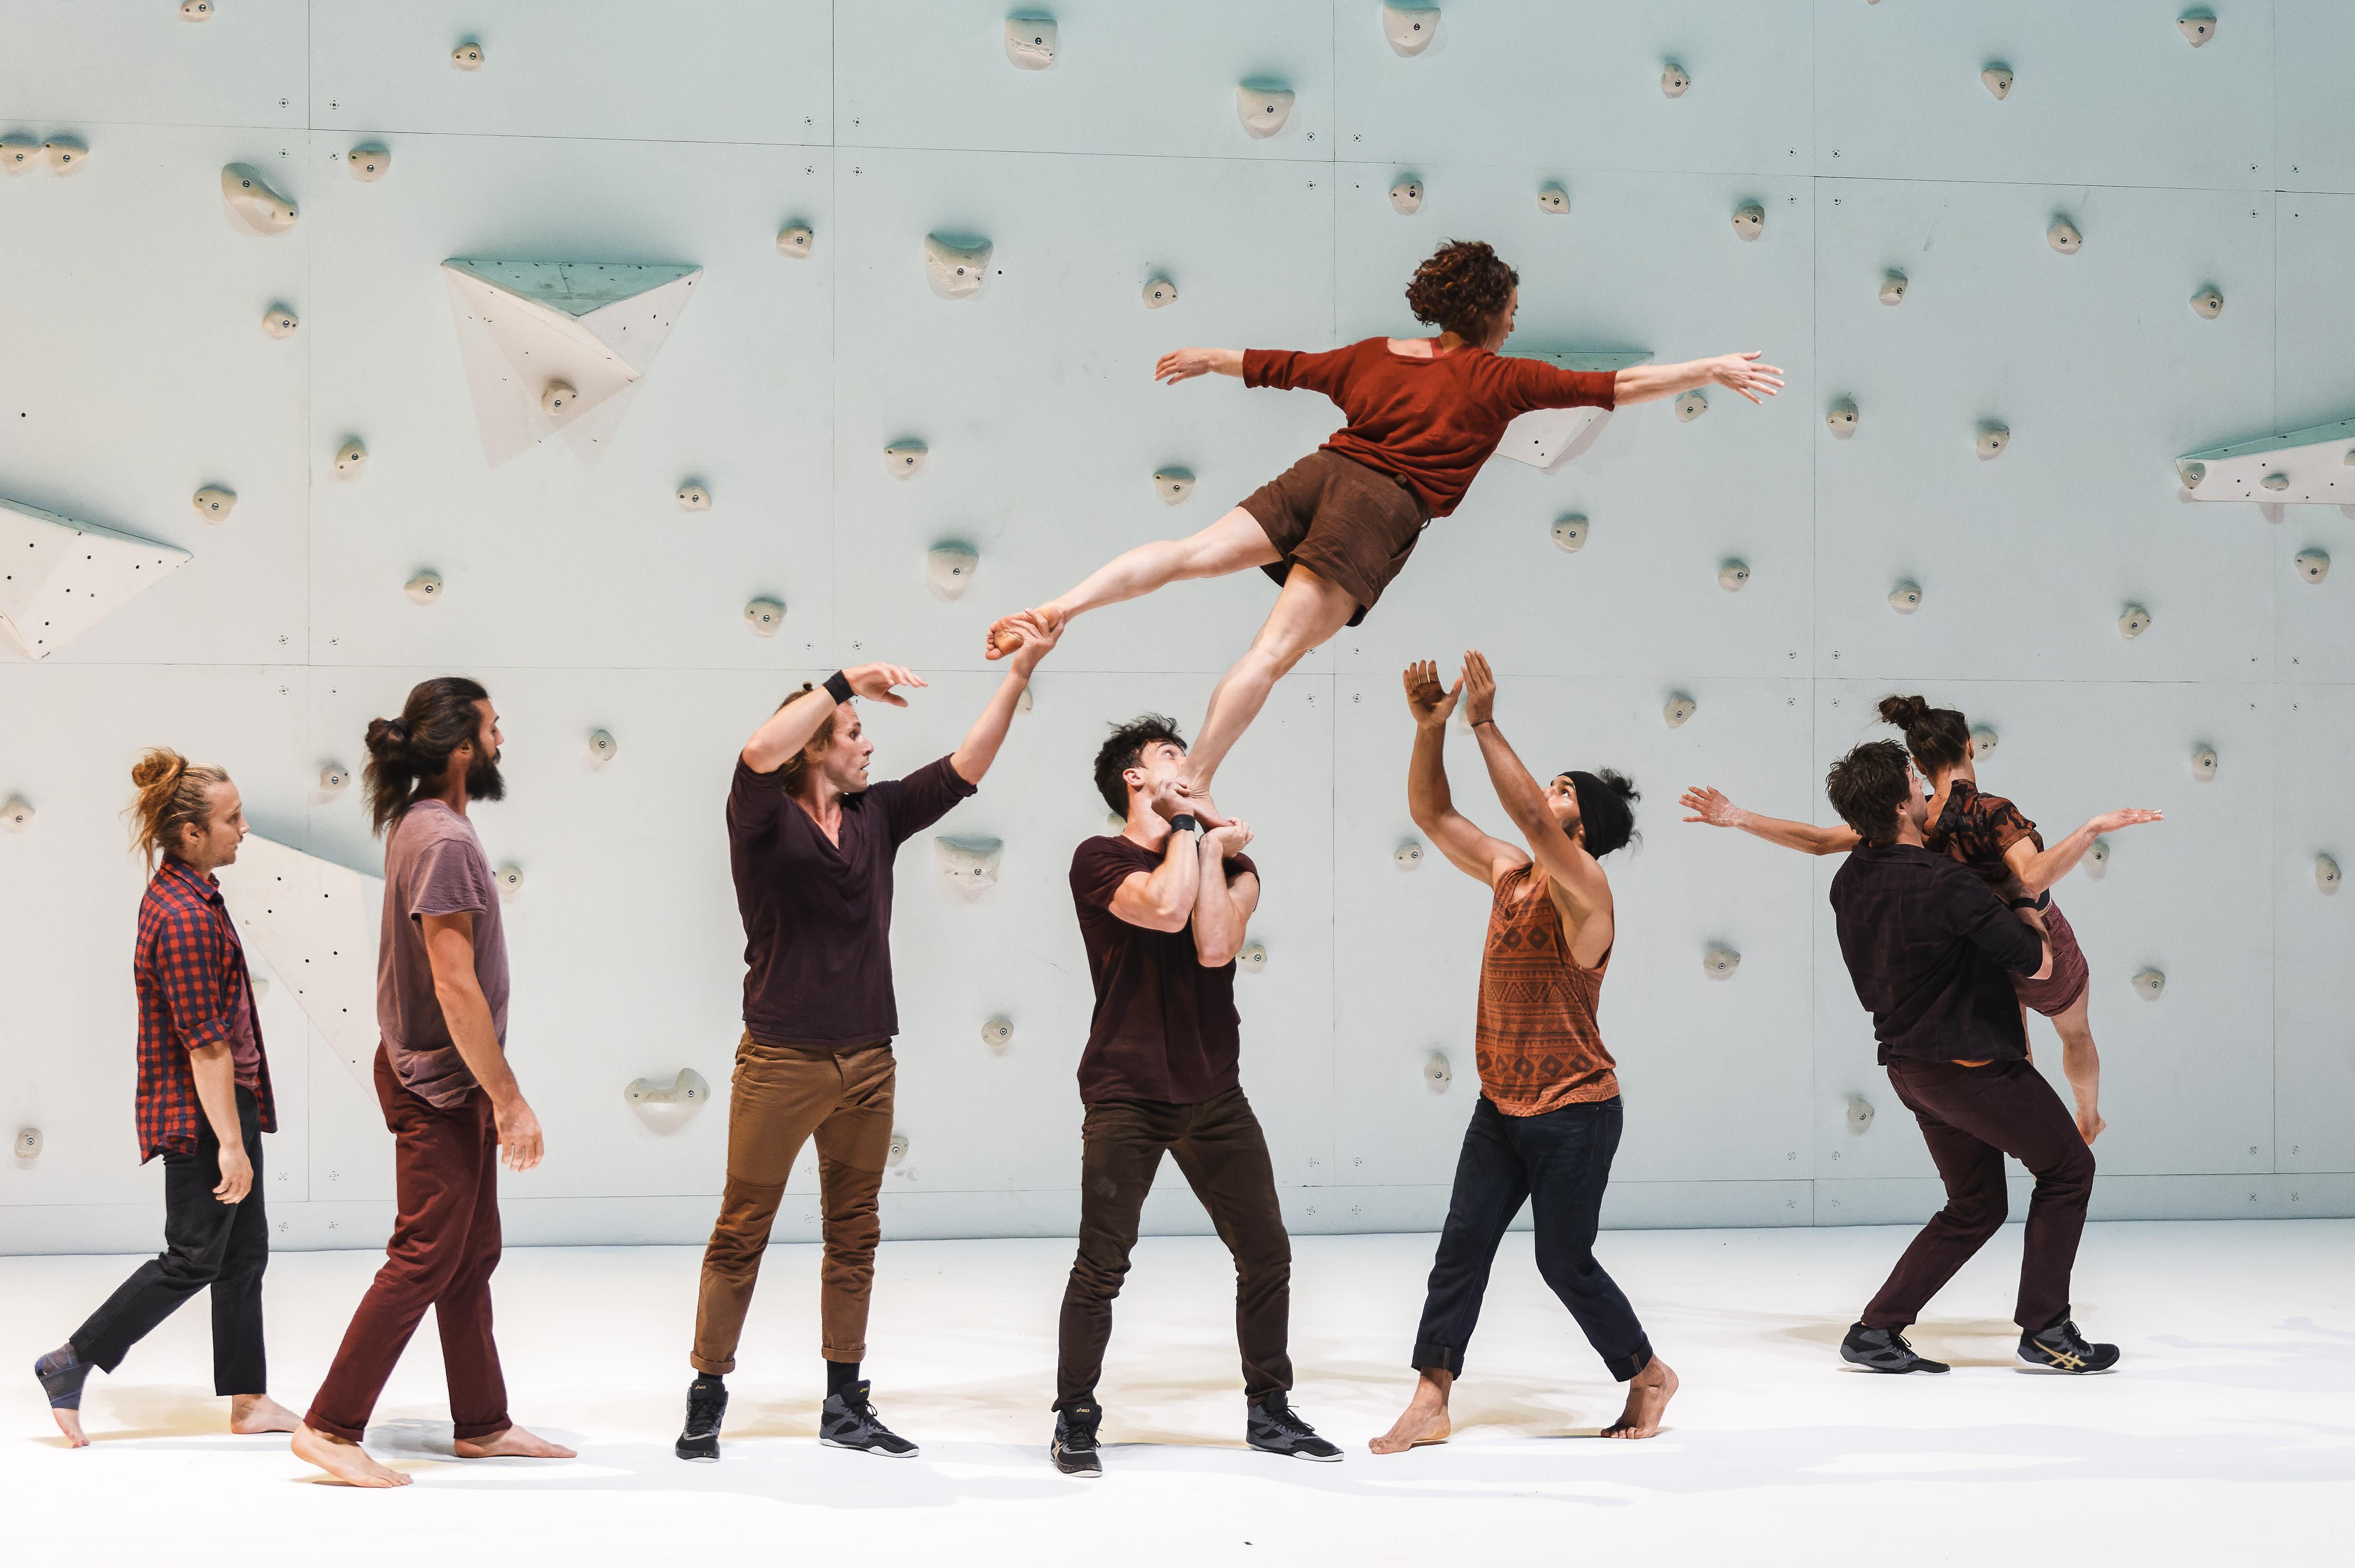 Danseurs devant un mur d’escalade balançant un danseur en l’air